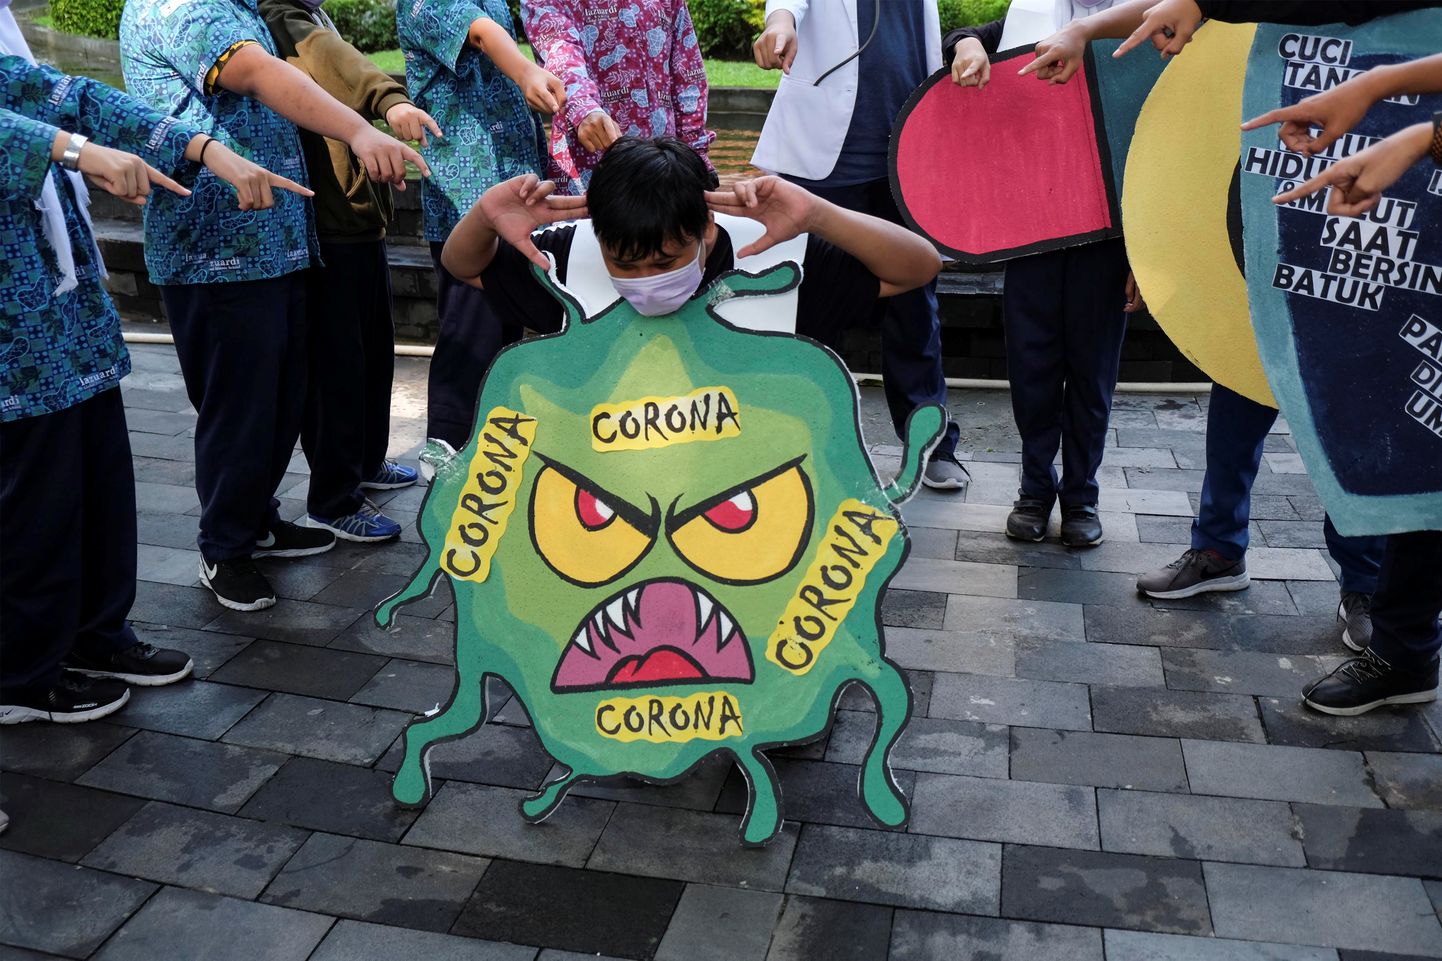 Õpilased Indoneesias koroonaviirust kujutava plakatiga.